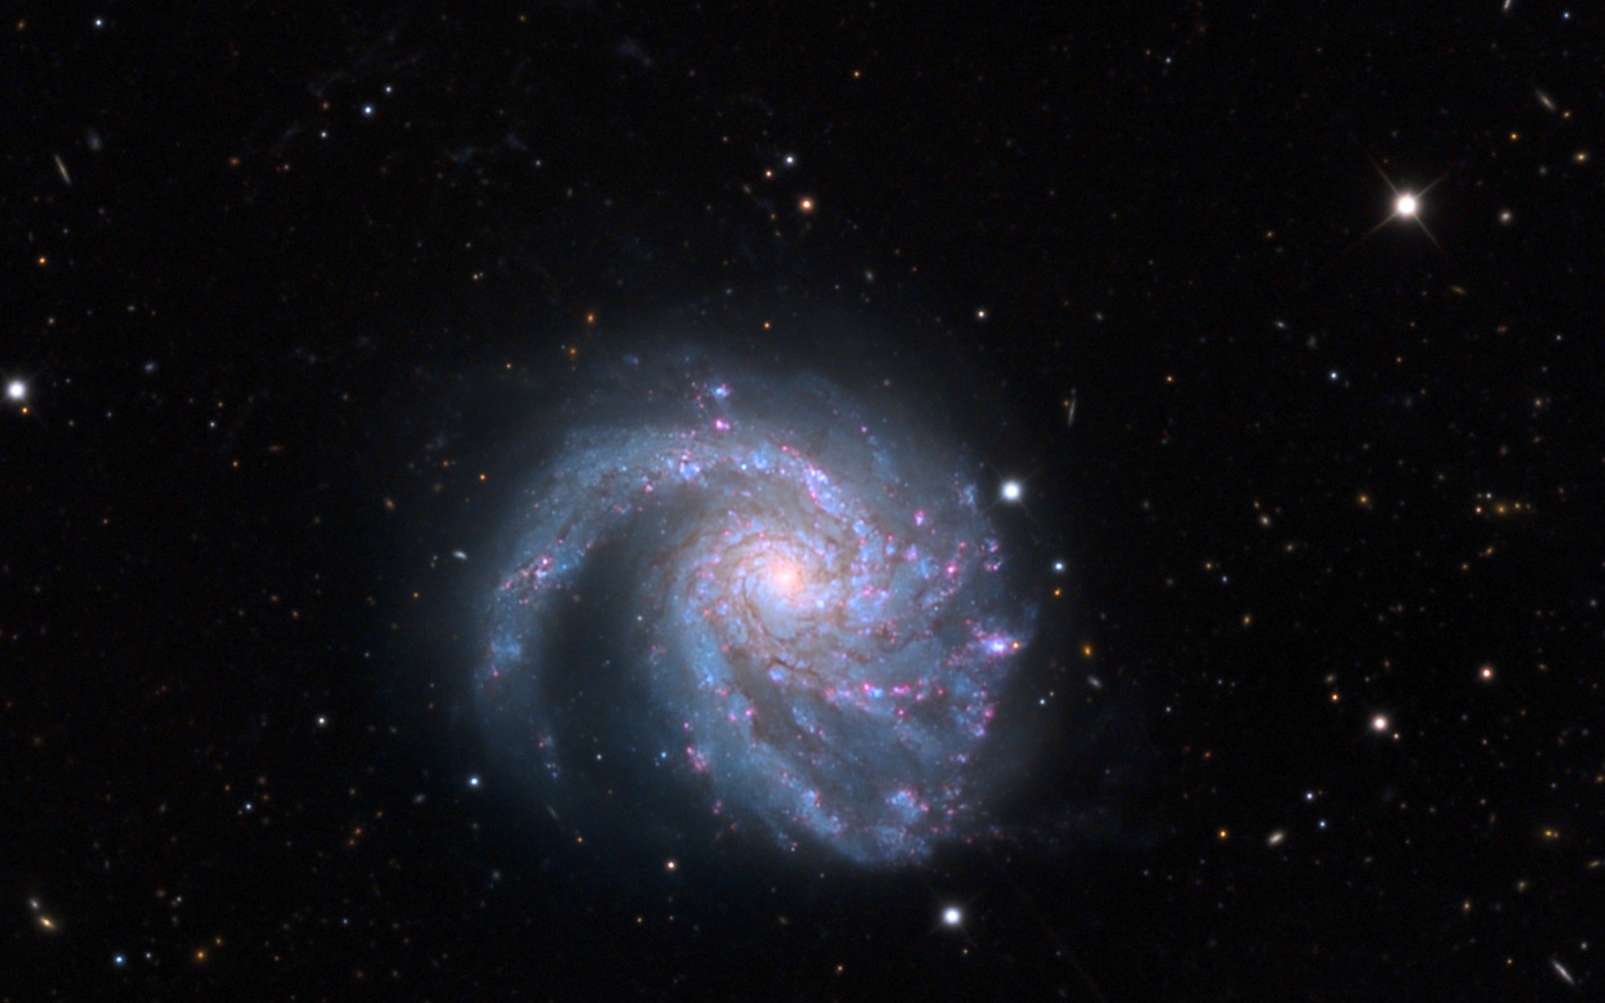 Une galaxie de l'Amas de la Vierge, Messier 99. © Adam Block, Mount Lemmon SkyCenter, University of Arizona